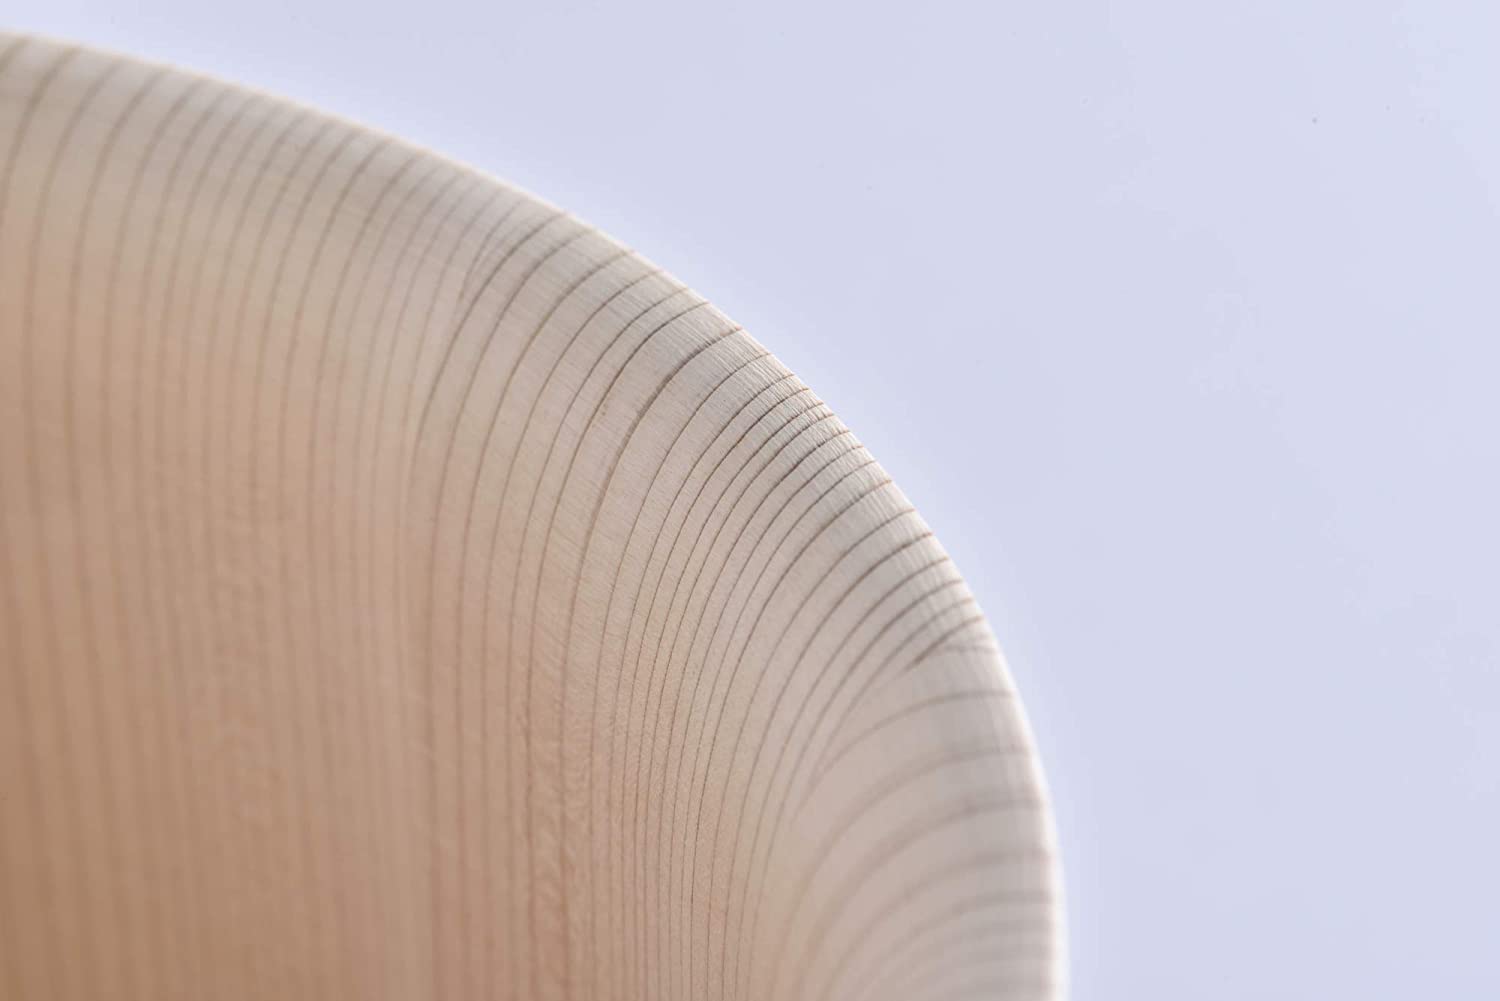 木製寿司桶は木の種類で選ぶ